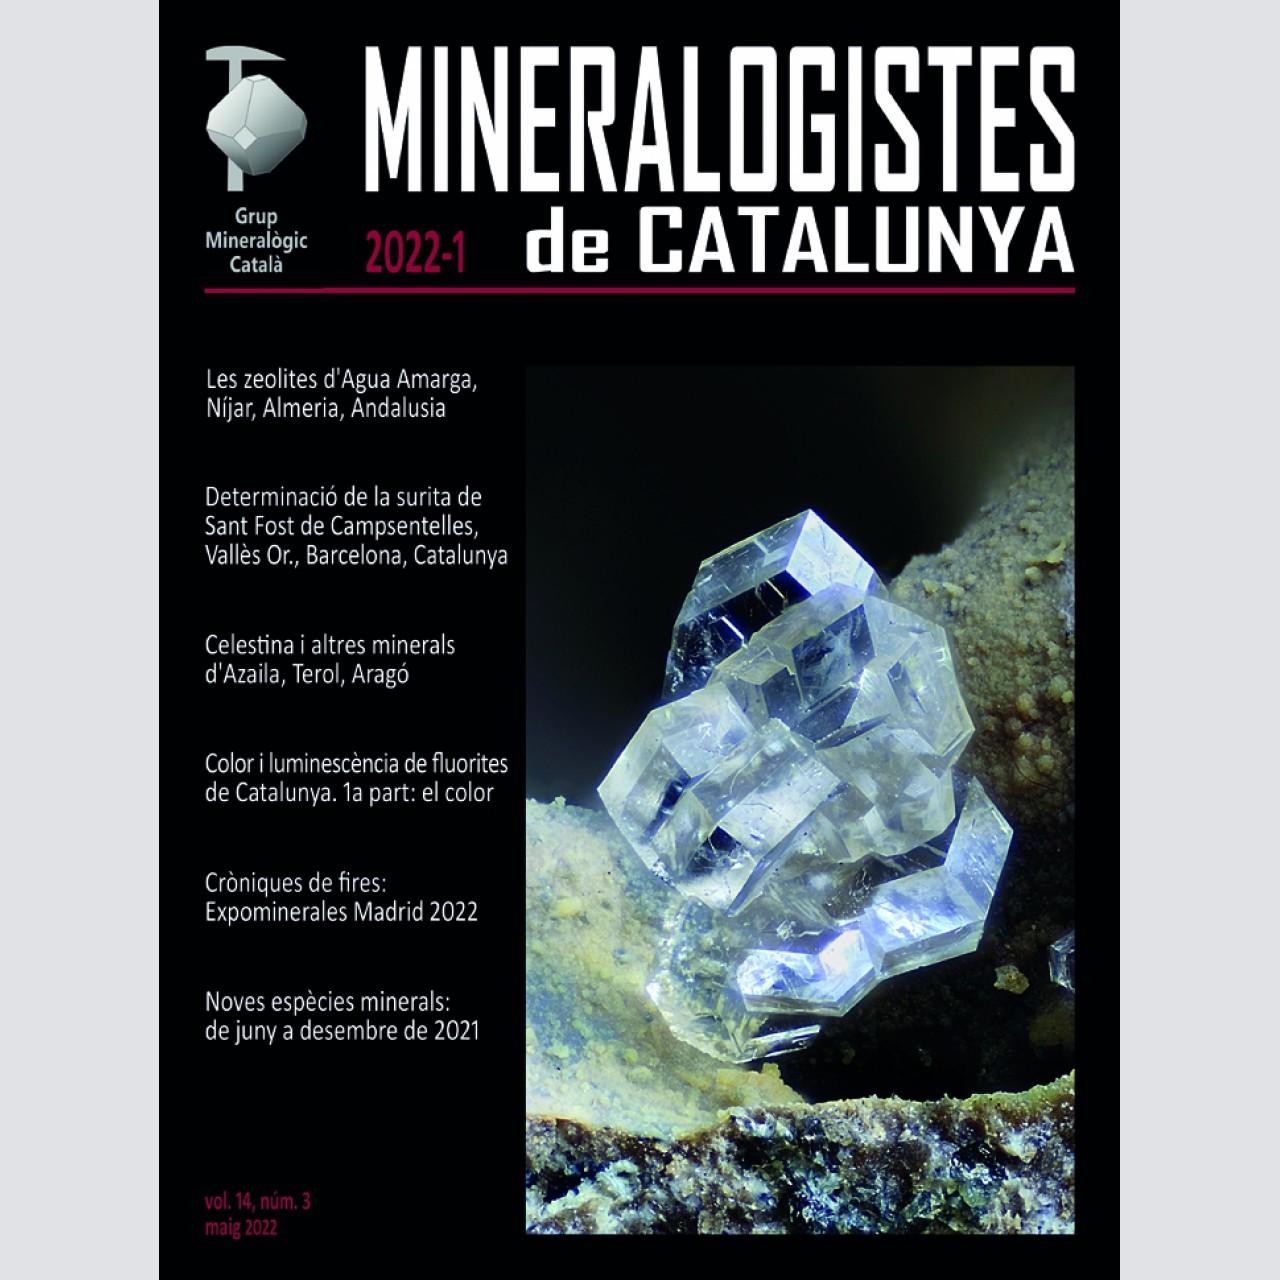 <em>Mineralogistes de Catalunya</em> (2022-1)